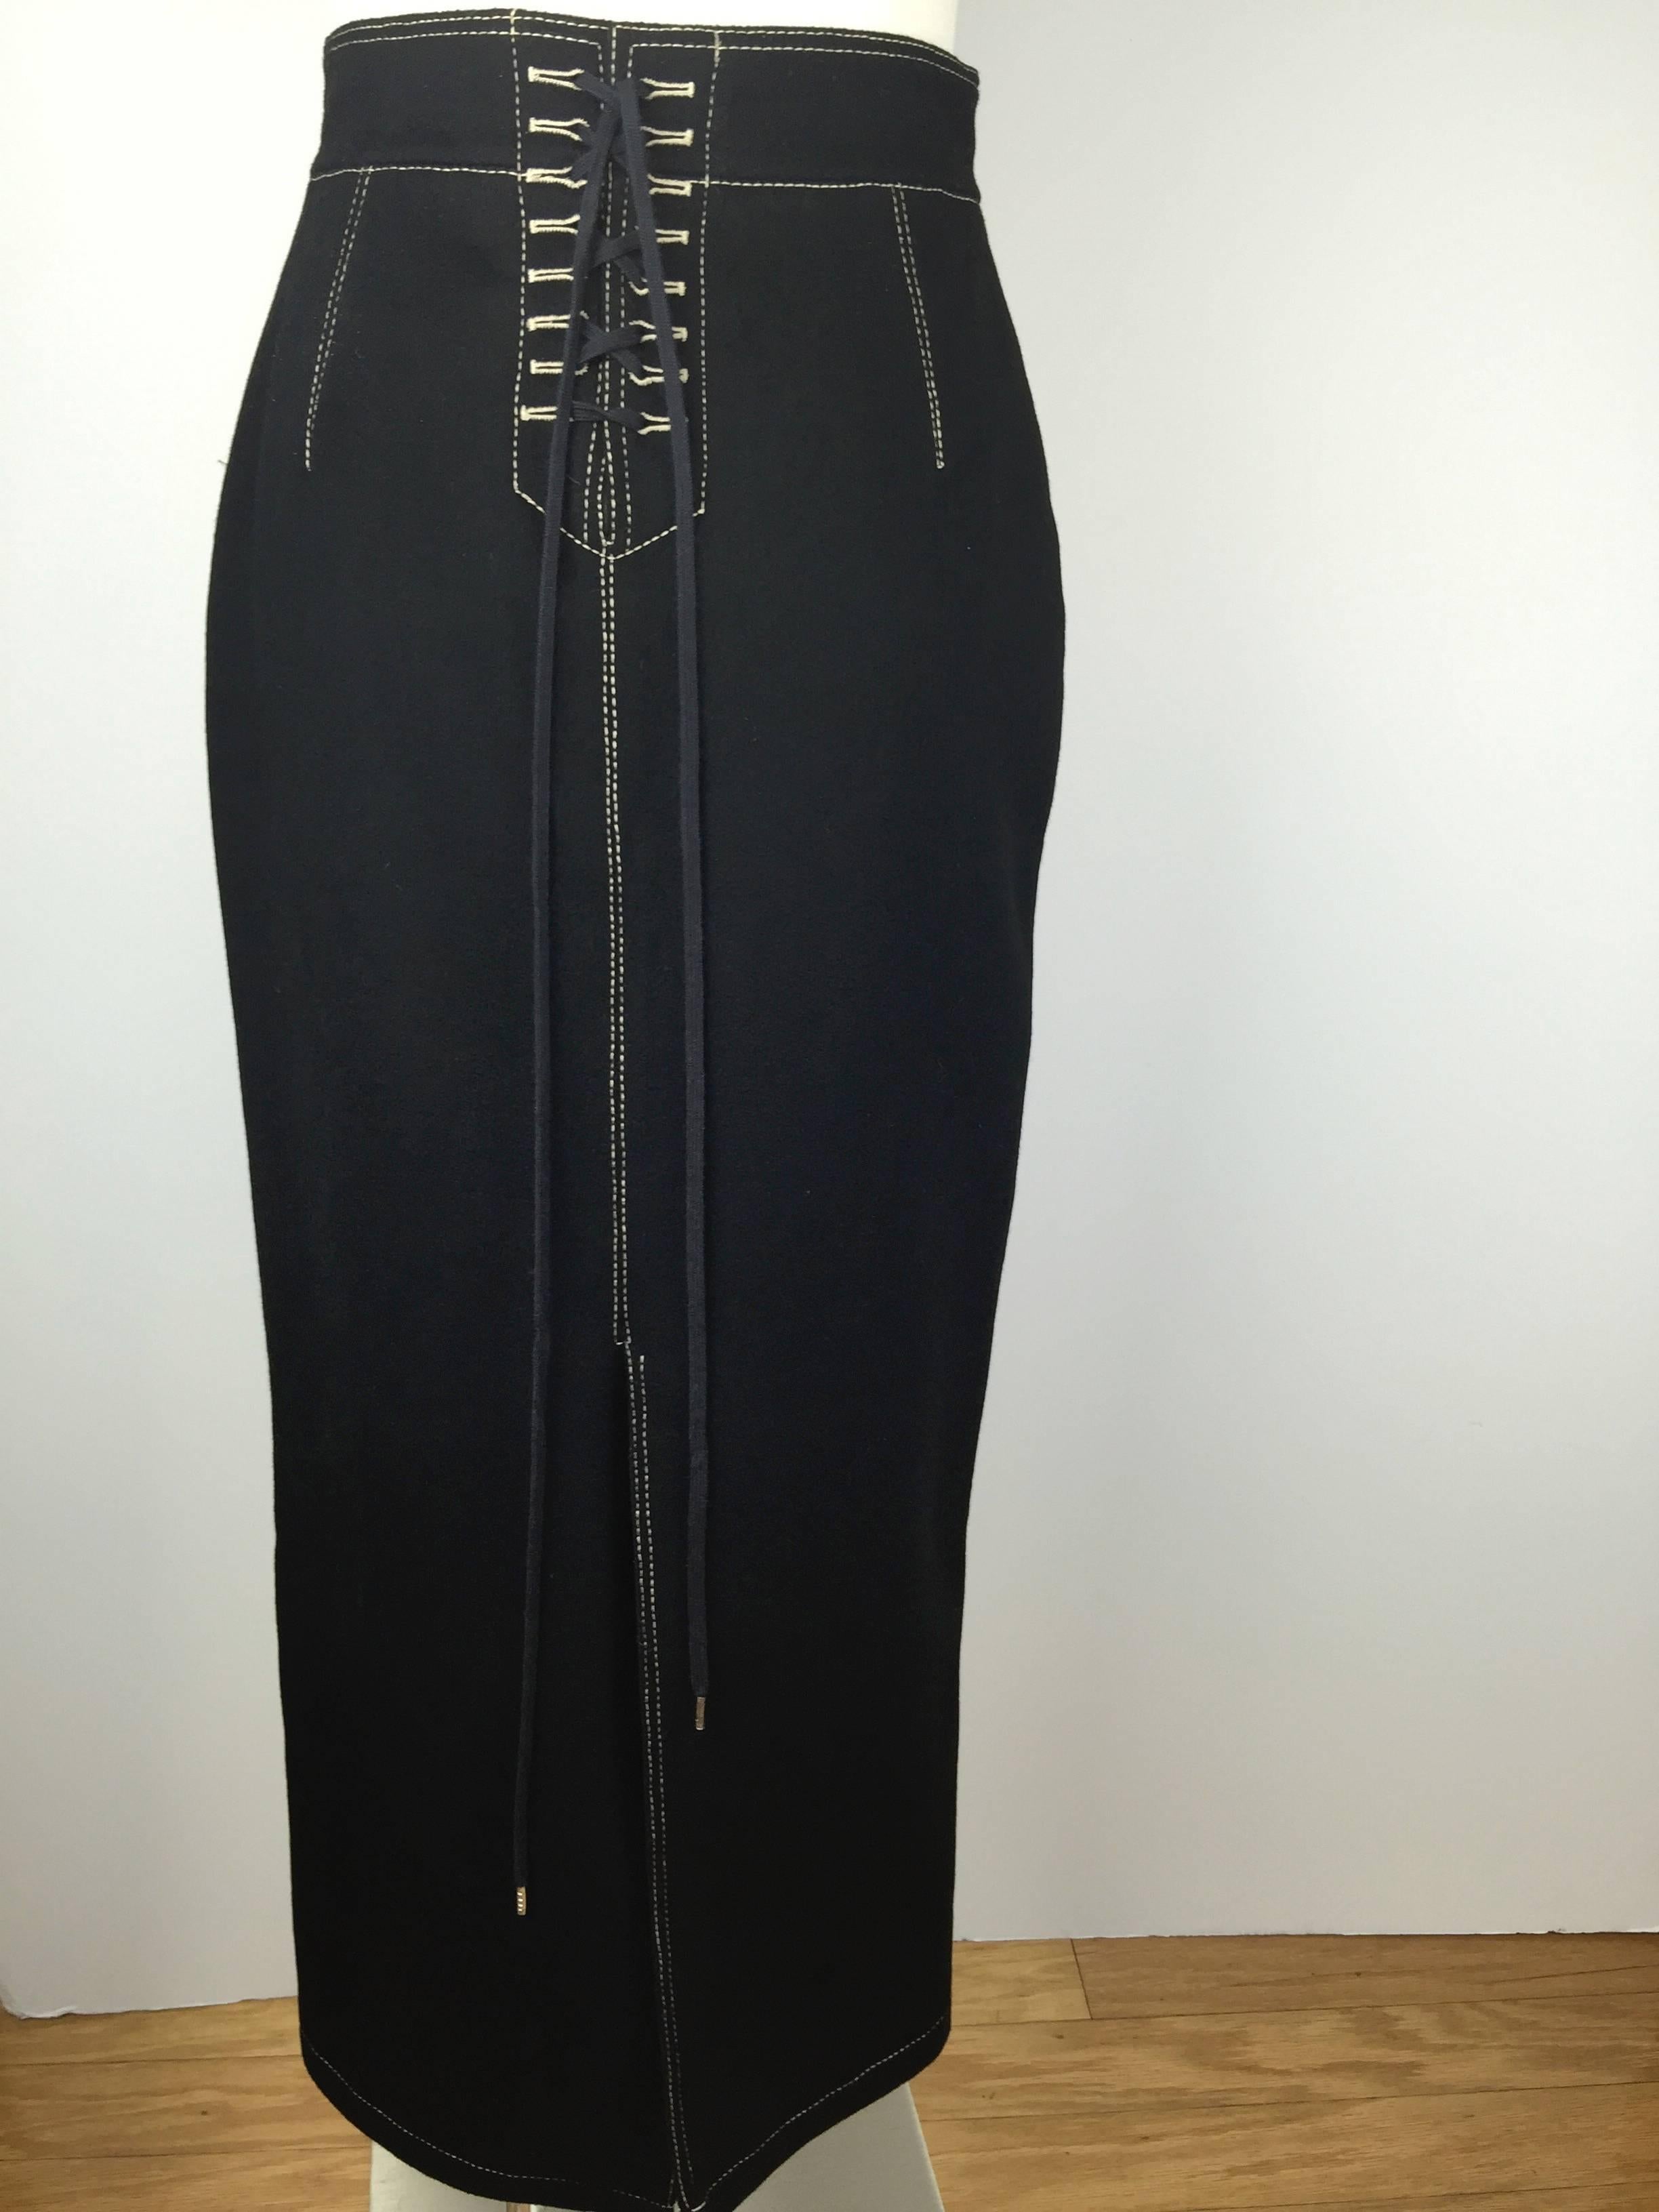  Jean Paul Gaultier Black Wool Folkloric Long Skirt. 1